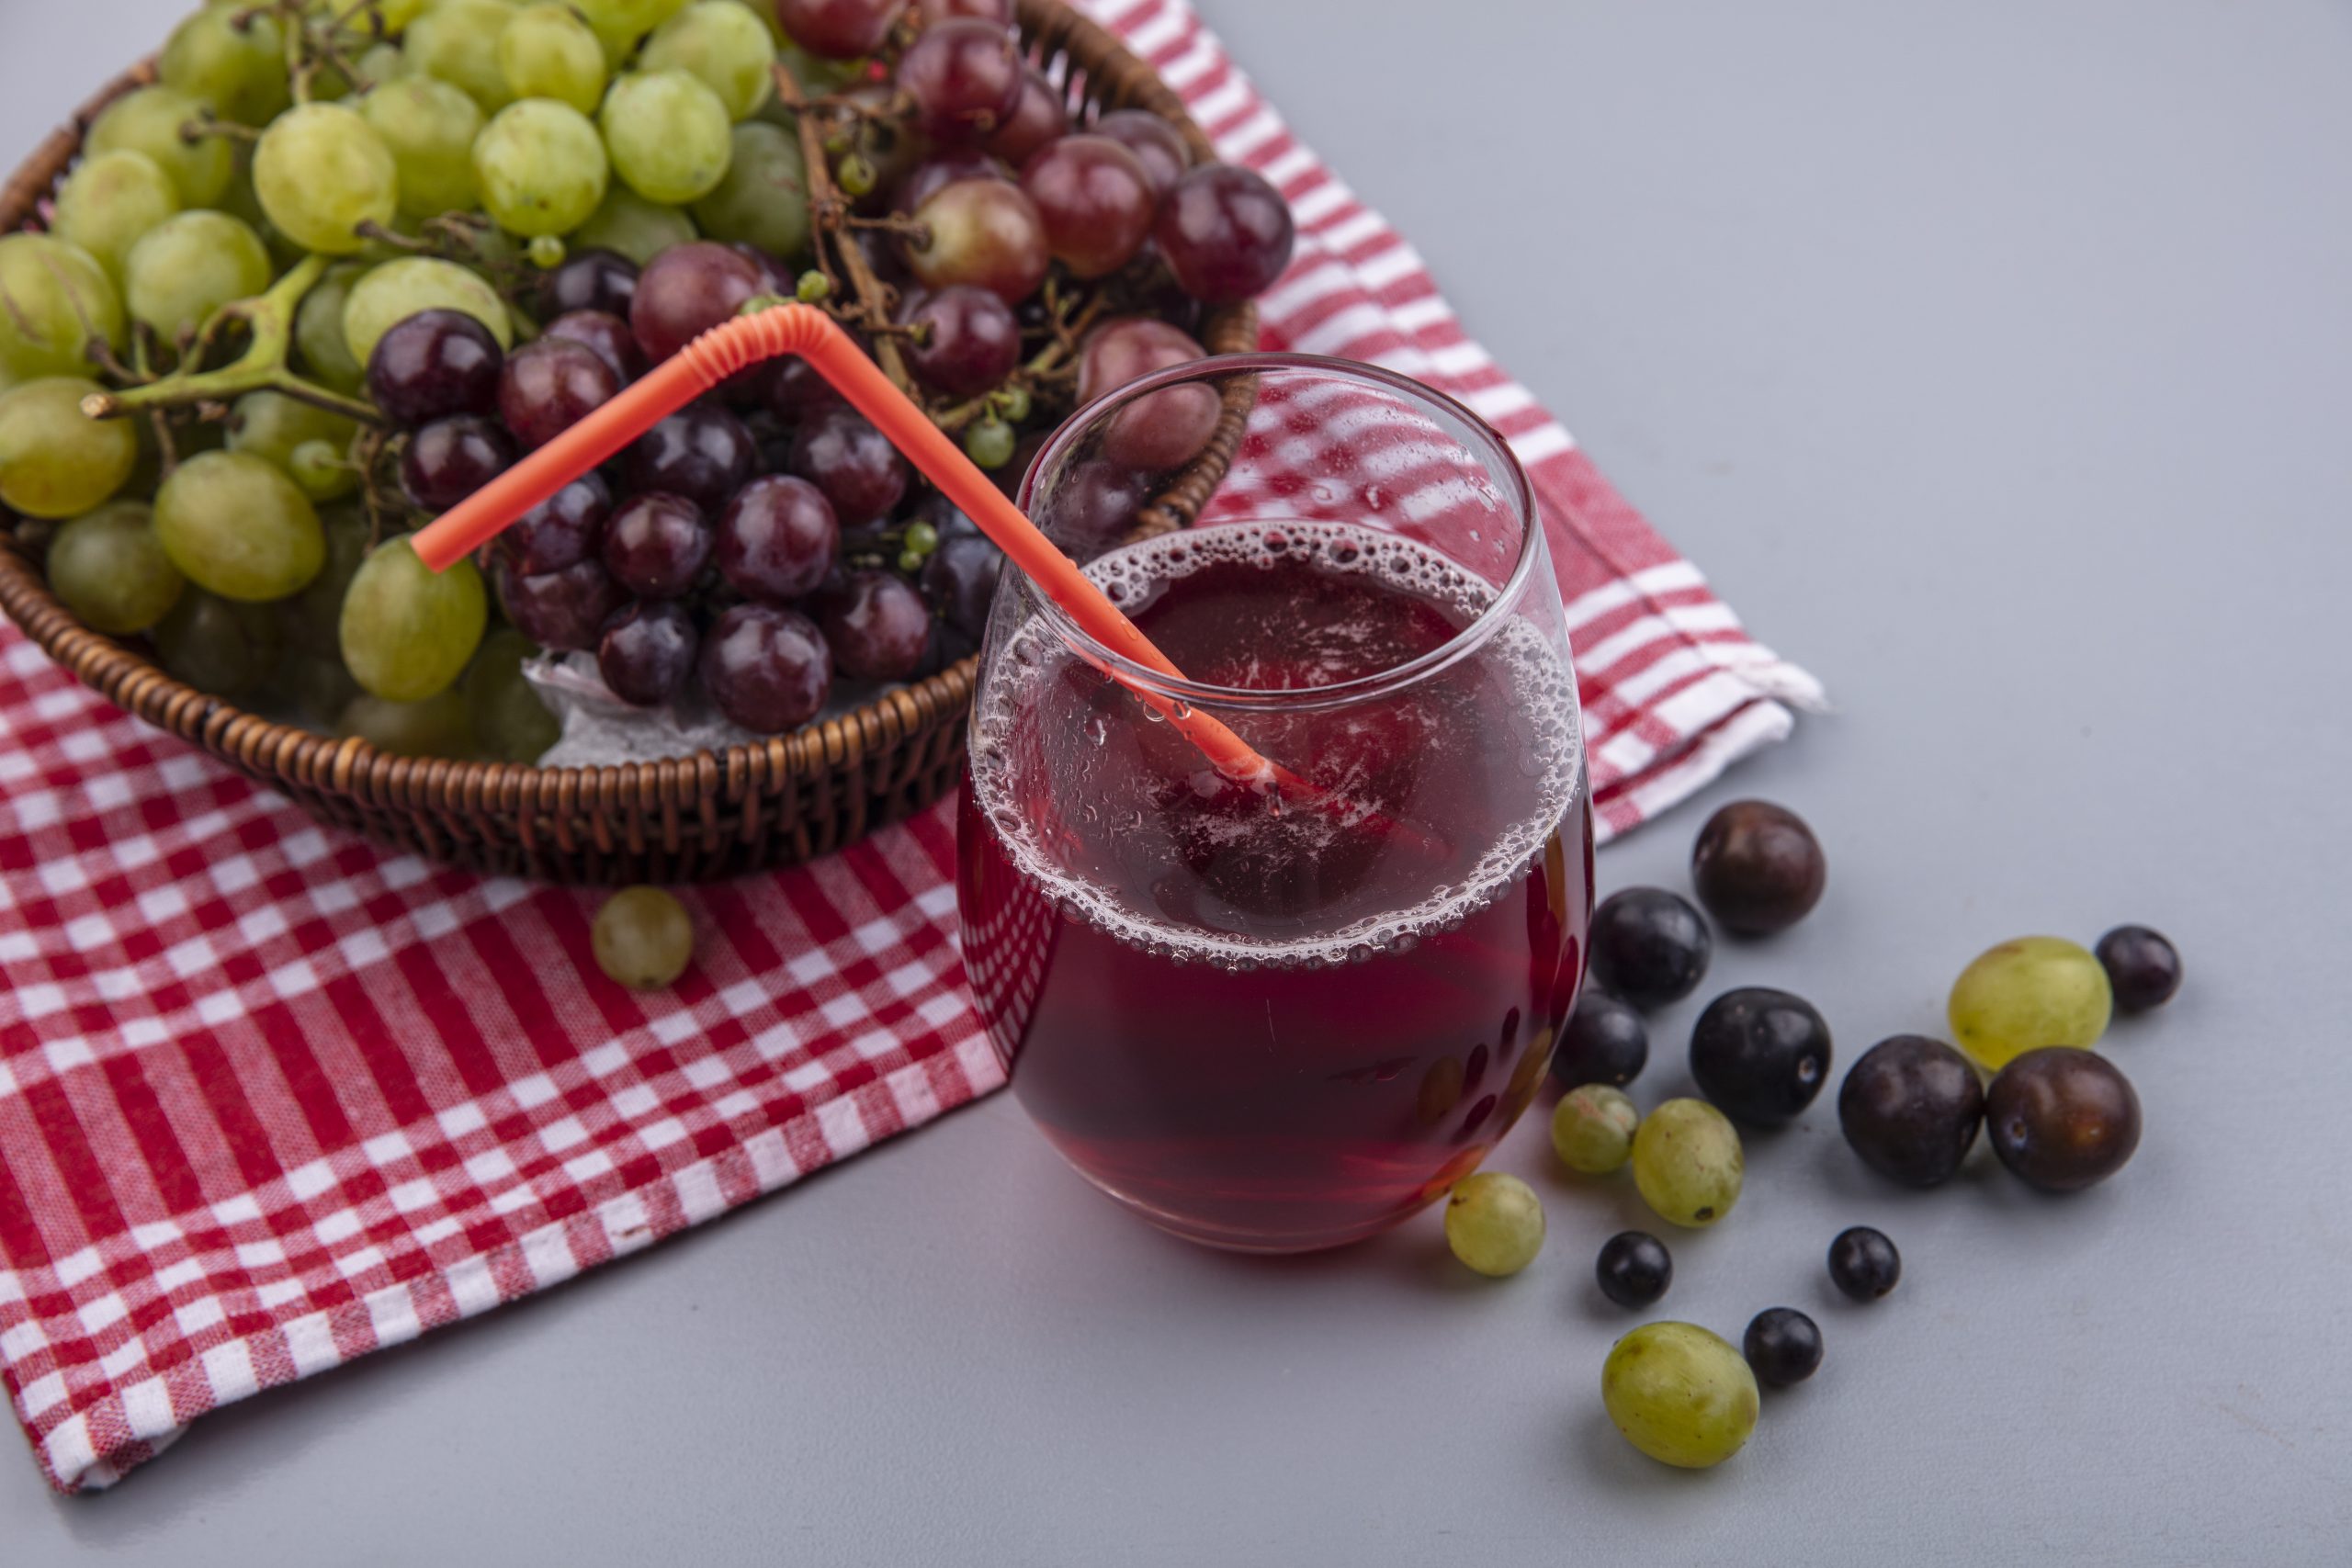 Suco de uva integral: melhores marcas e onde comprar, segundo especialistas